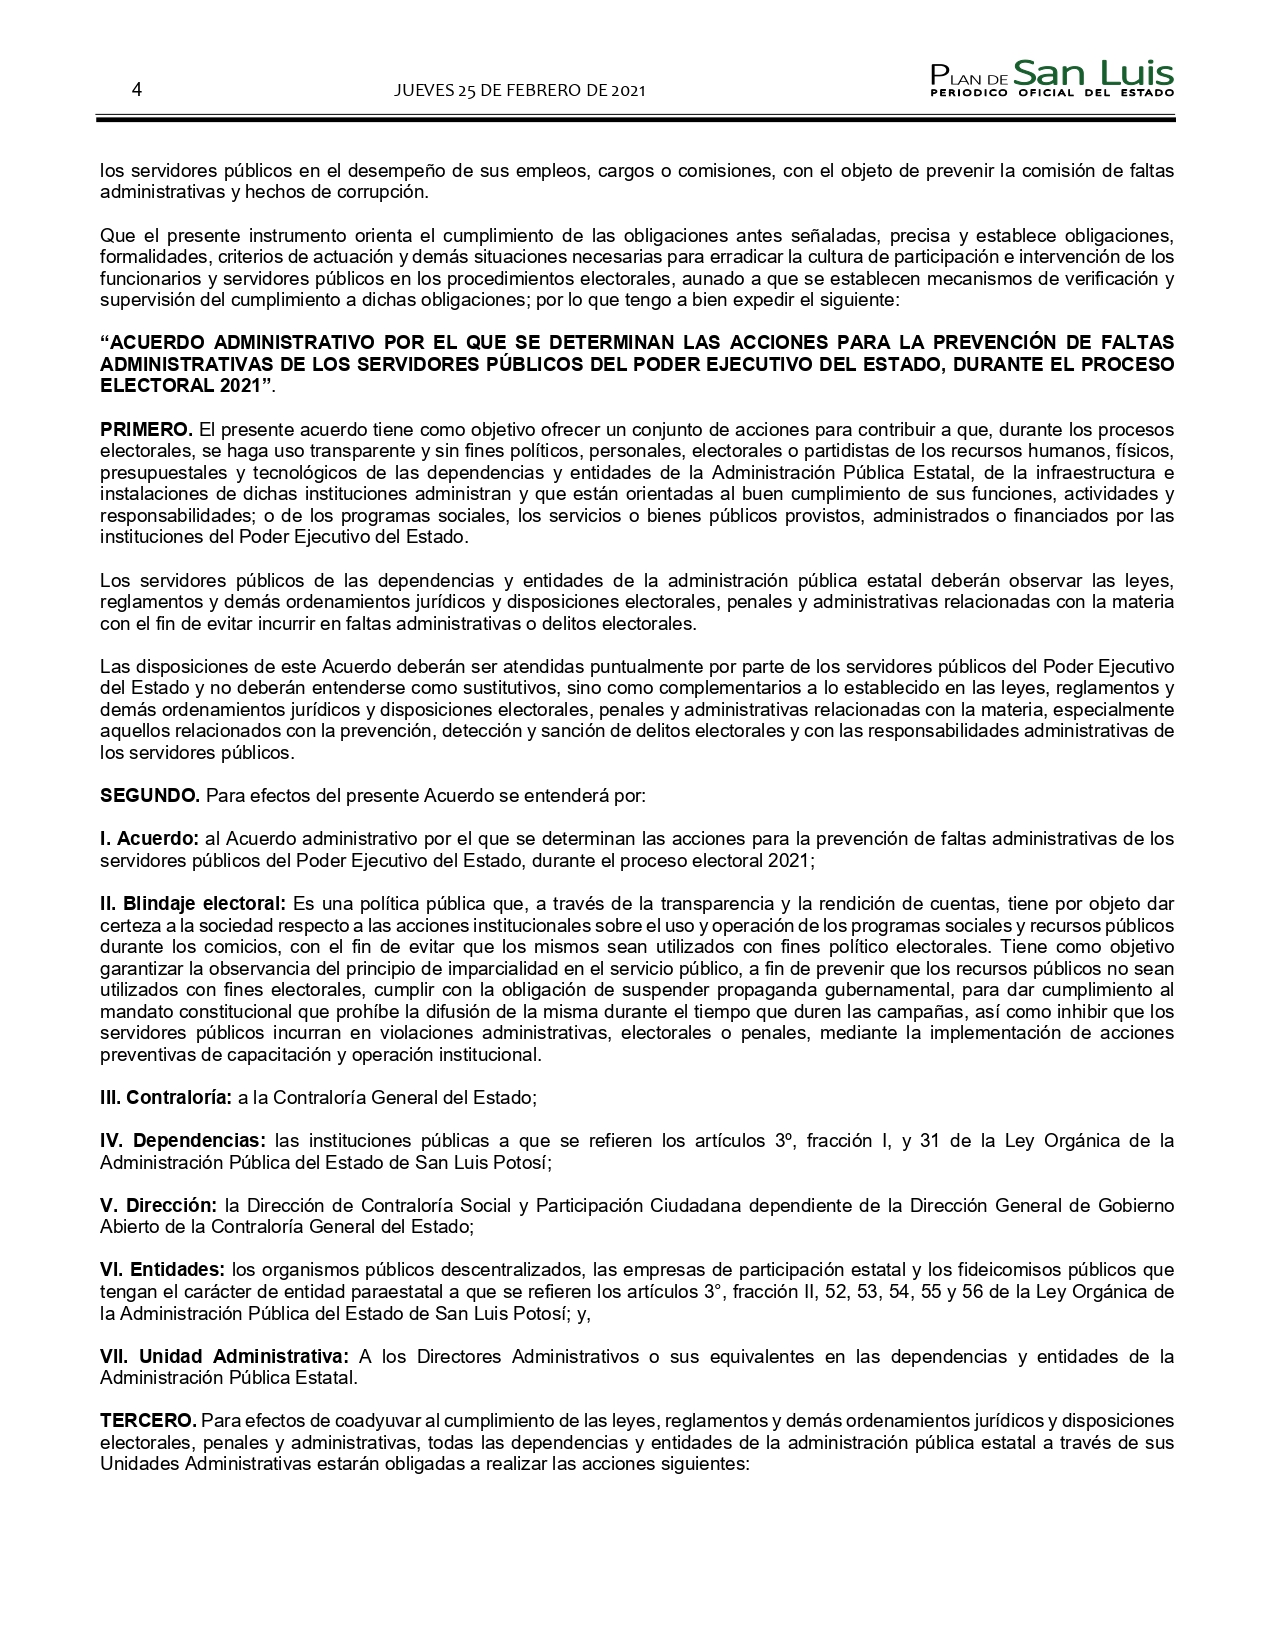 SLP ACUERDO PARA LA PREVENCION DE FALTAS DE LOS SERVIDORES PUBLICOS (25-FEB-2021) (1)_pages-to-jpg-0004.jpg